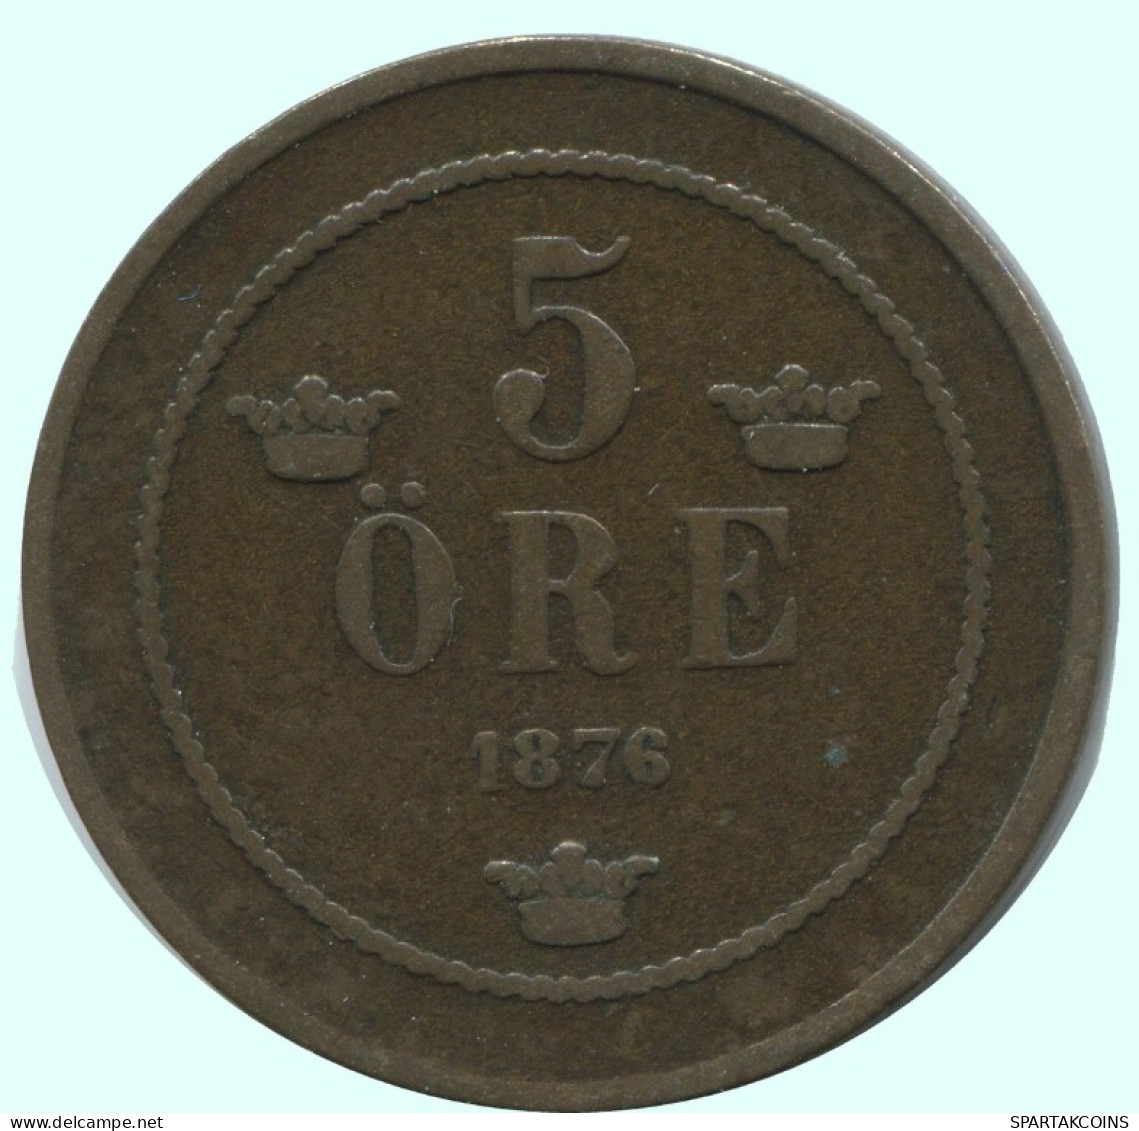 5 ORE 1876 SUECIA SWEDEN Moneda #AC580.2.E.A - Svezia